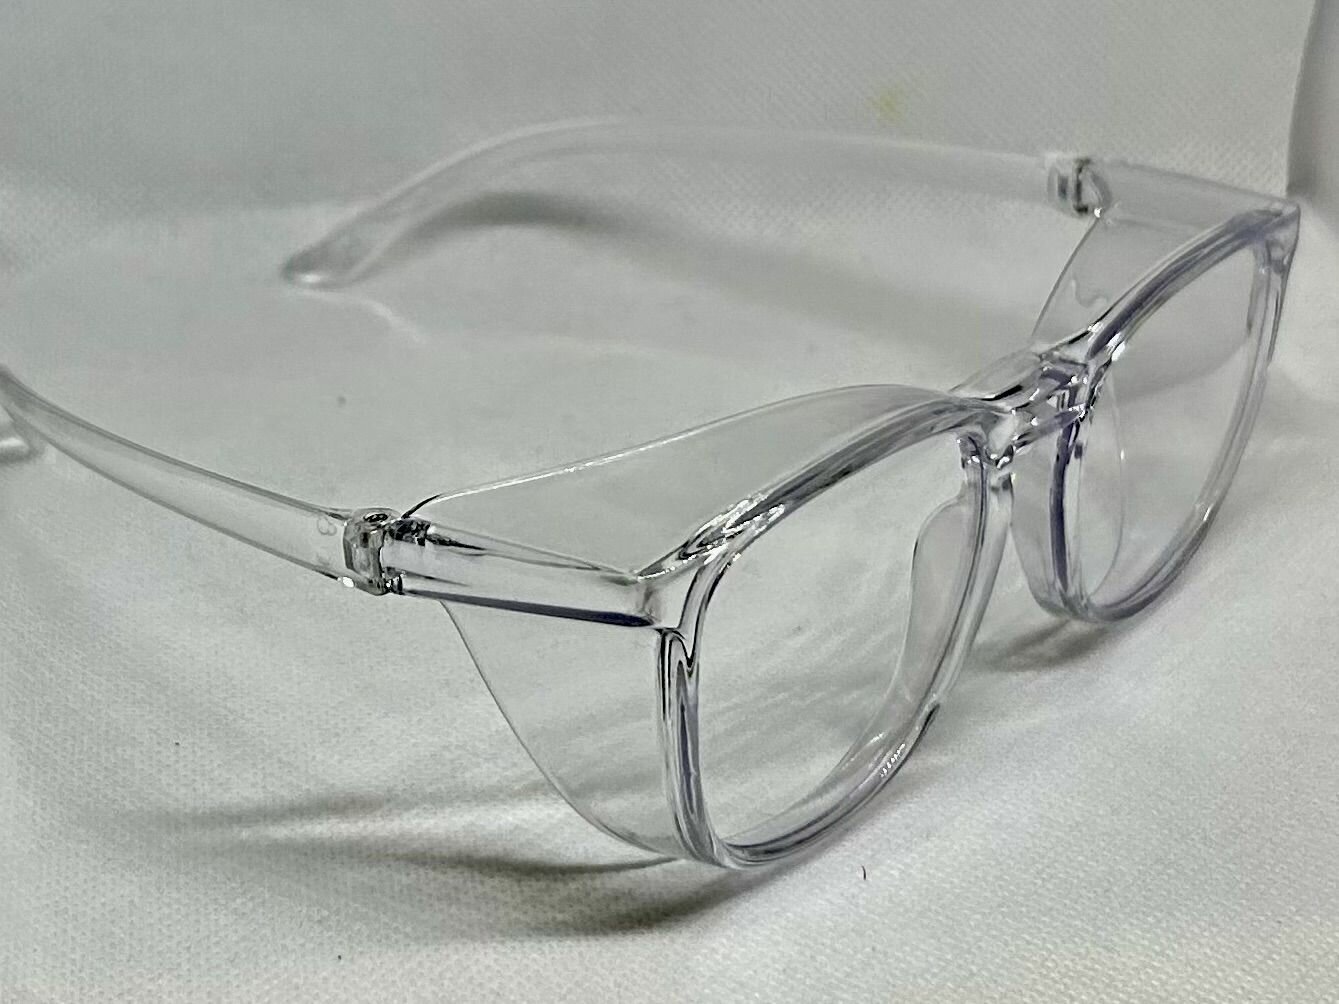 Очки защитные для мастера с коррекцией зрения -2,25, открытые с боковой и верхней защитой, противопыльные, цвет прозрачный